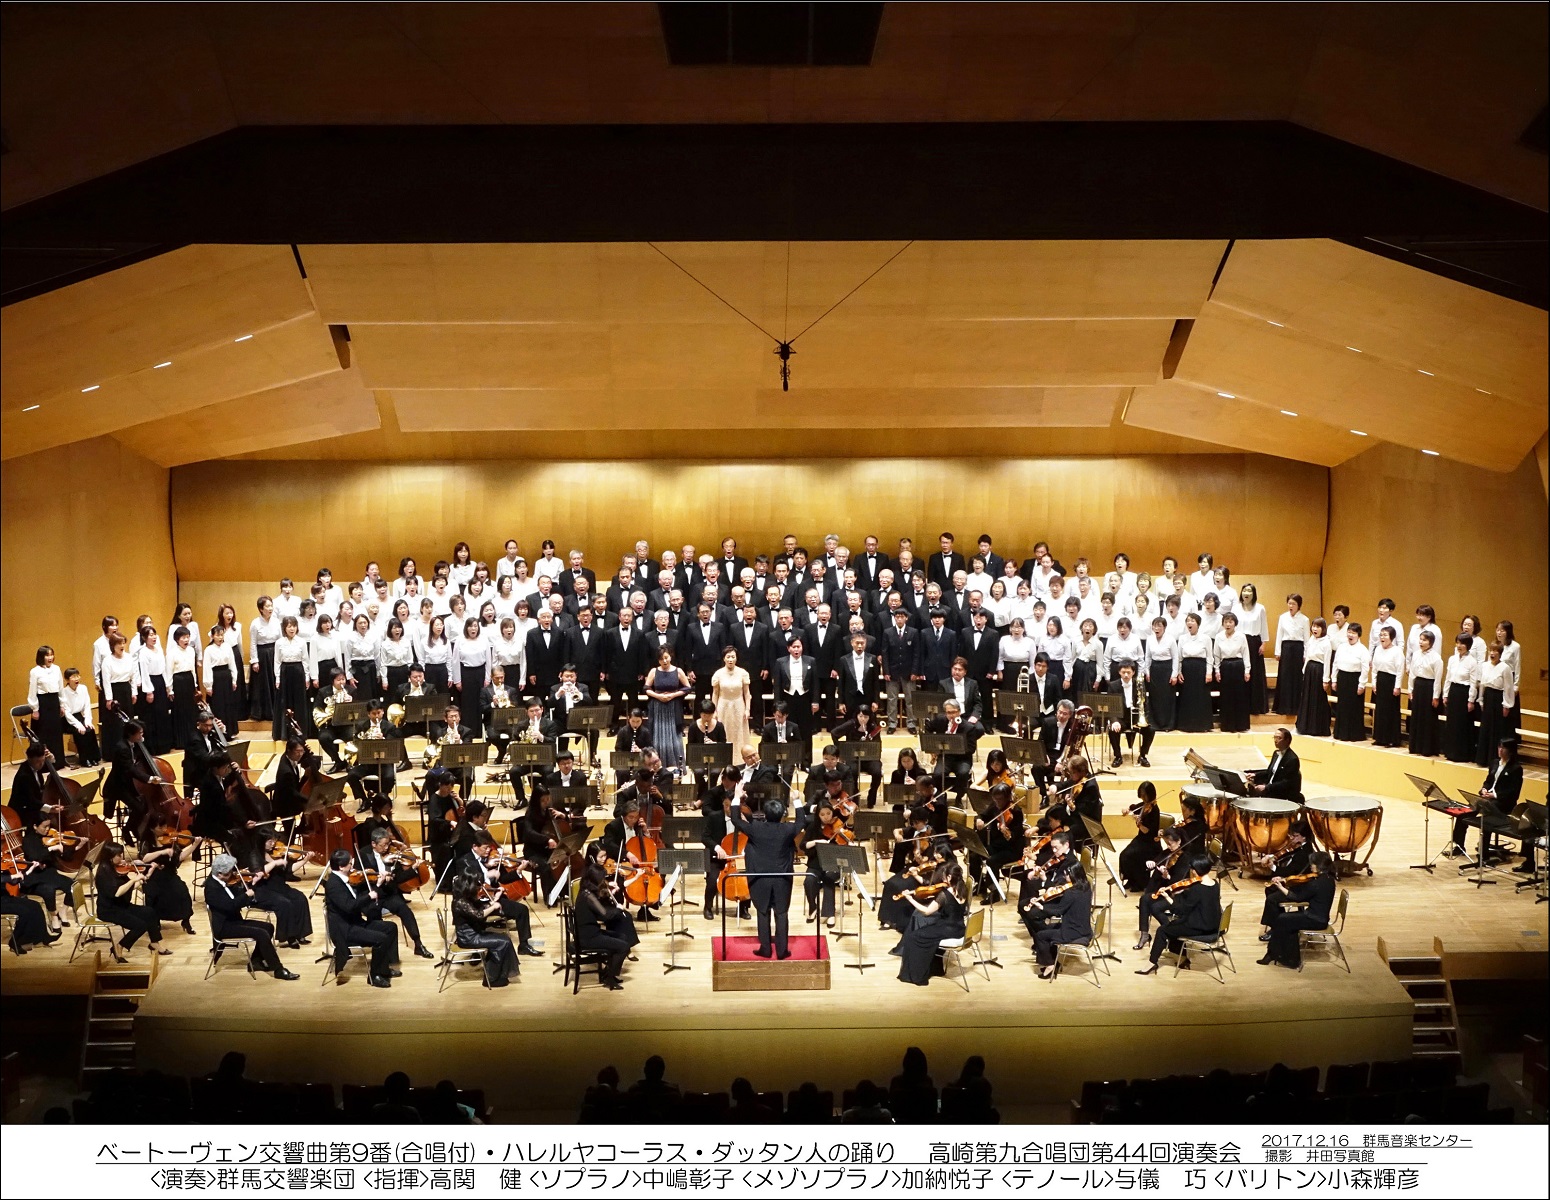 Chór Takasaki Daiku (Bethoven's Symphony No 9 Chorus Group of Takasaki) powstał w 1974 roku. Jego nazwę można przetłumaczyć jako: Chór IX Symfonii Ludwiga van Beethovena z Miasta Takasaki - grafika artykułu